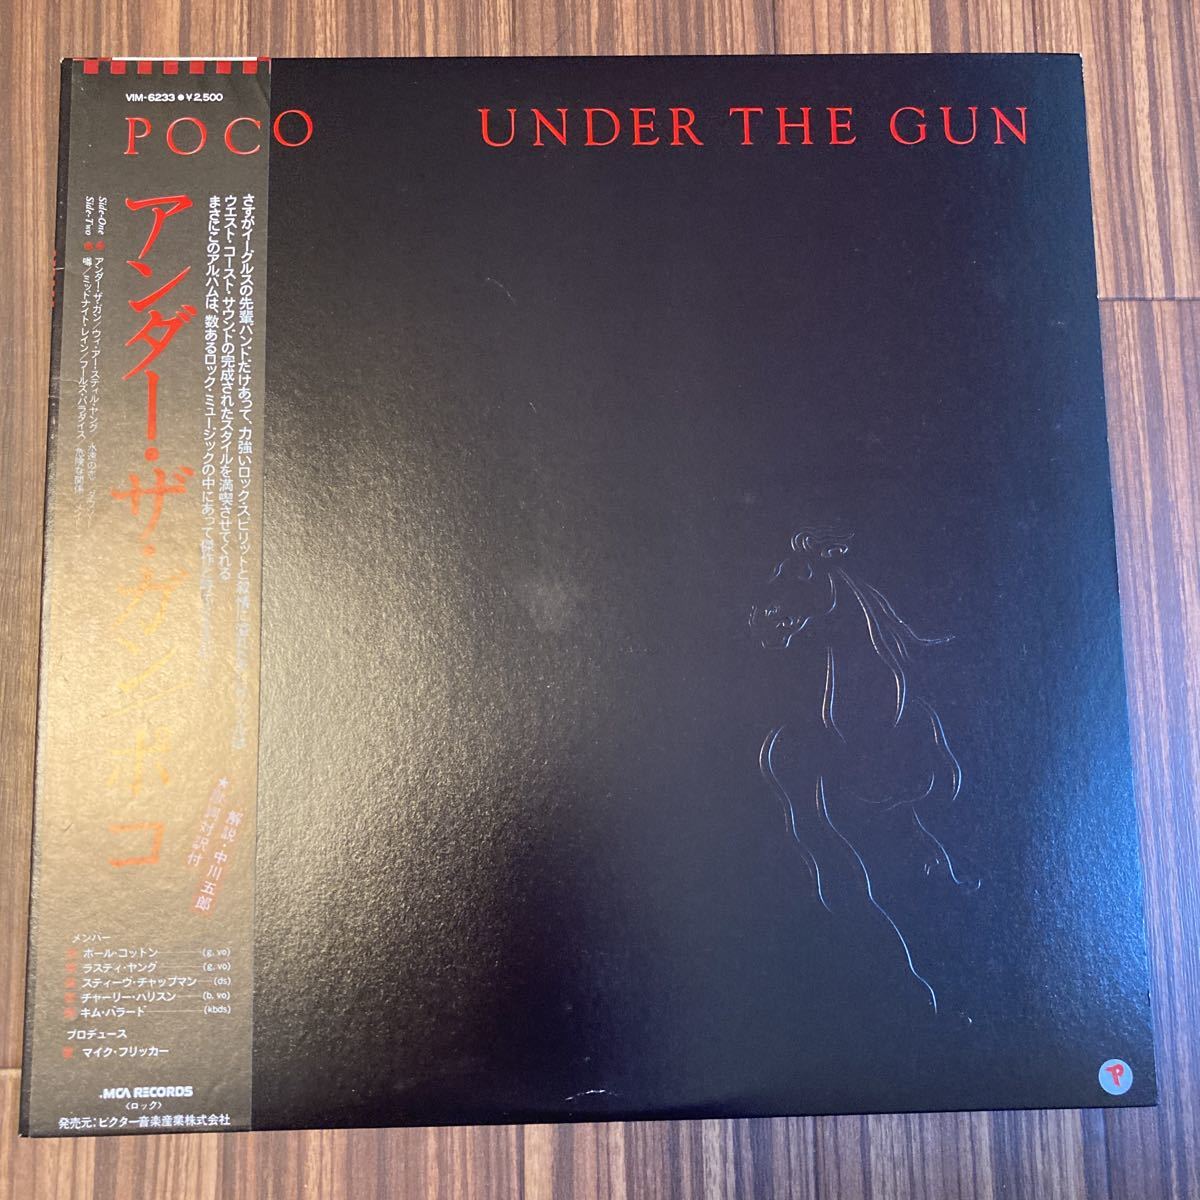 再生良好 美品 LP POCO(ポコ)/UNDER THE GUN(アンダー・ザ・ガン) VIM-6233_画像1